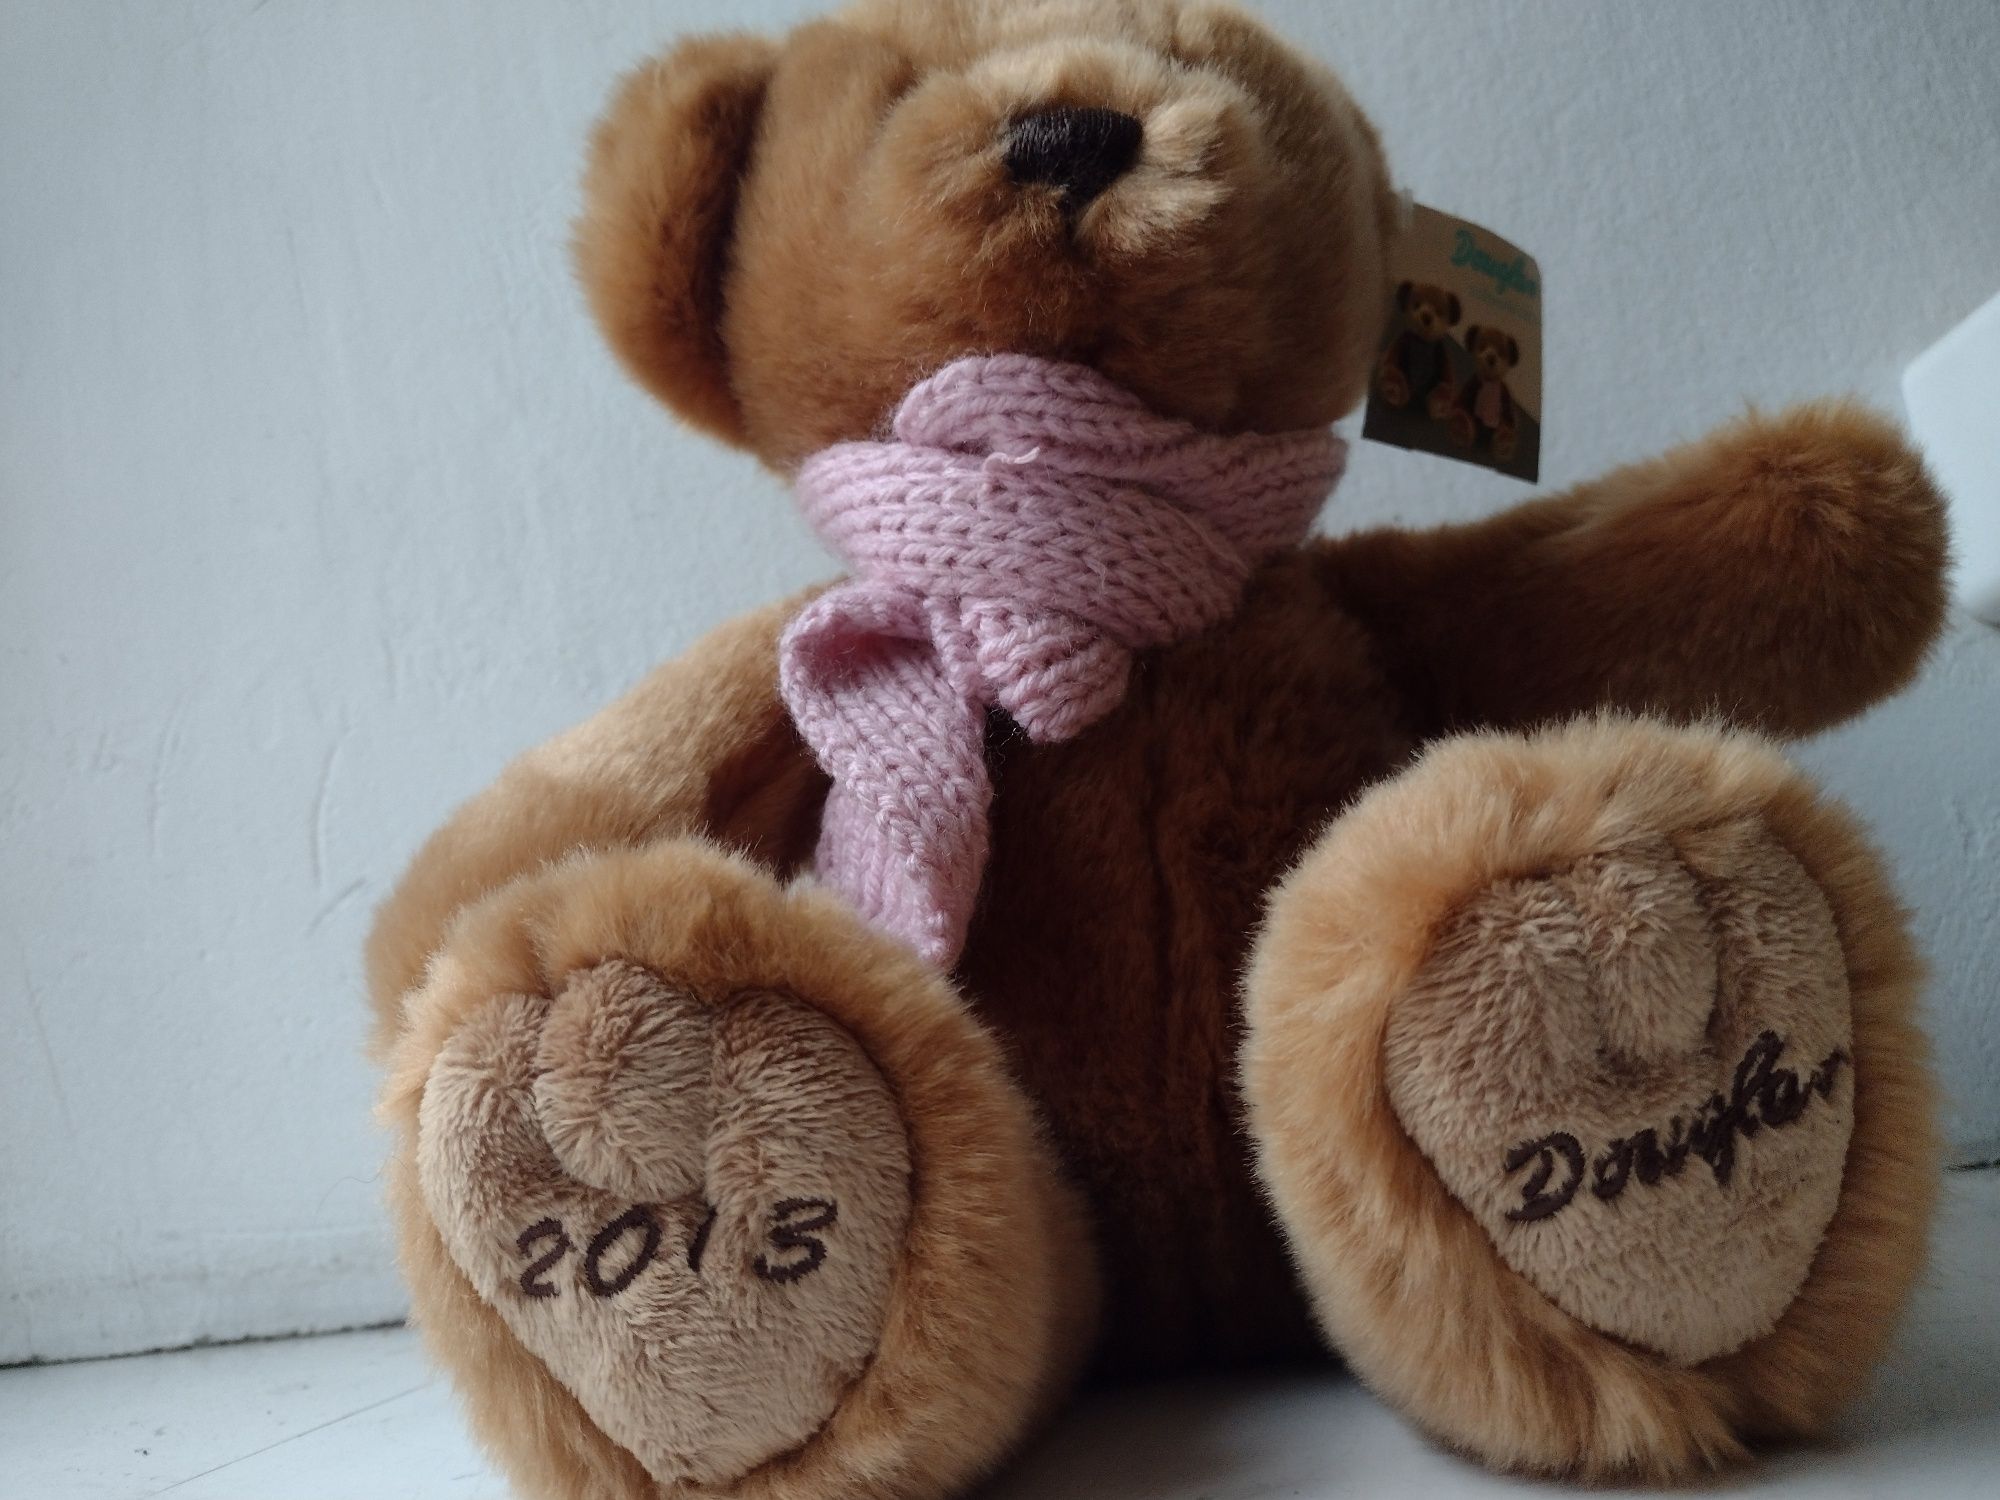 Miś Douglas 2013 nowy 25cm pluszak maskotka Teddybear kolekcjo